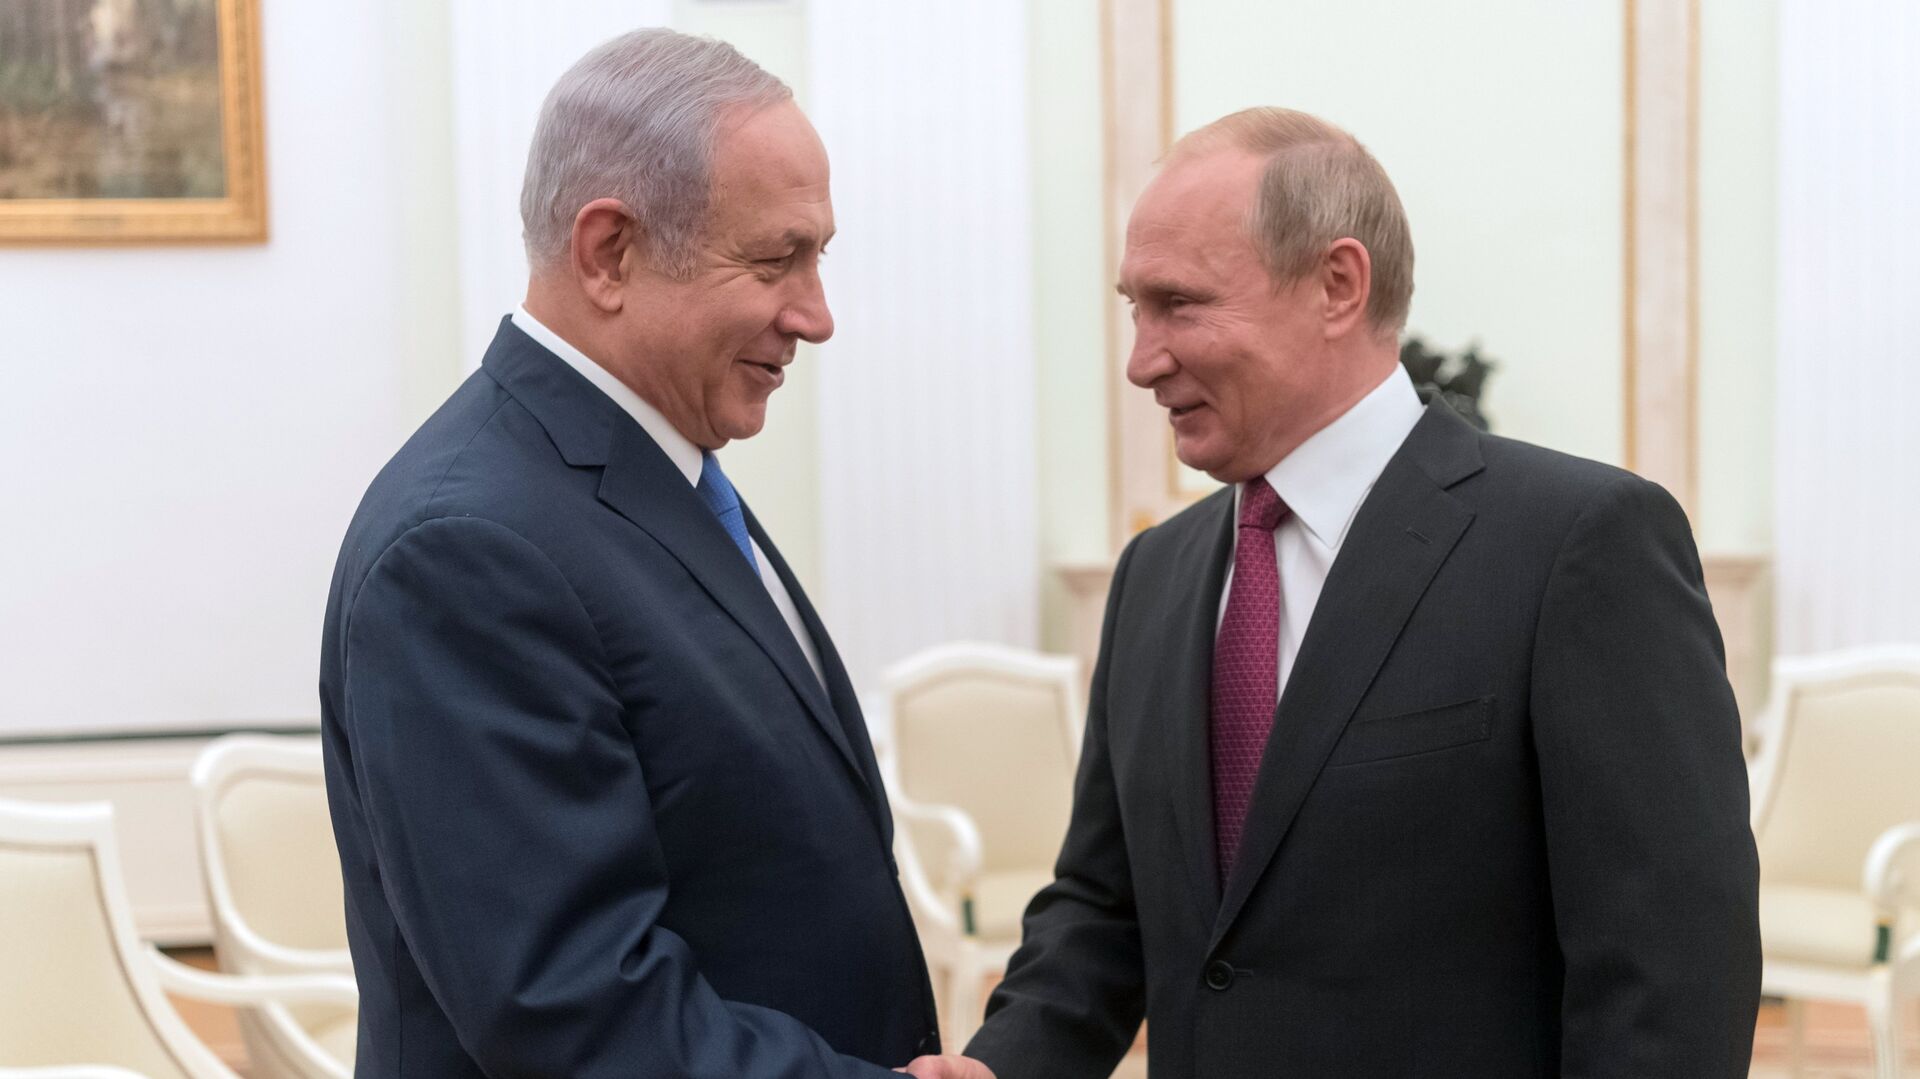  Владимир Путин и премьер-министр государства Израиль Биньямин Нетаньяху во время встречи. 11 июля 2018 - ИноСМИ, 1920, 27.09.2022